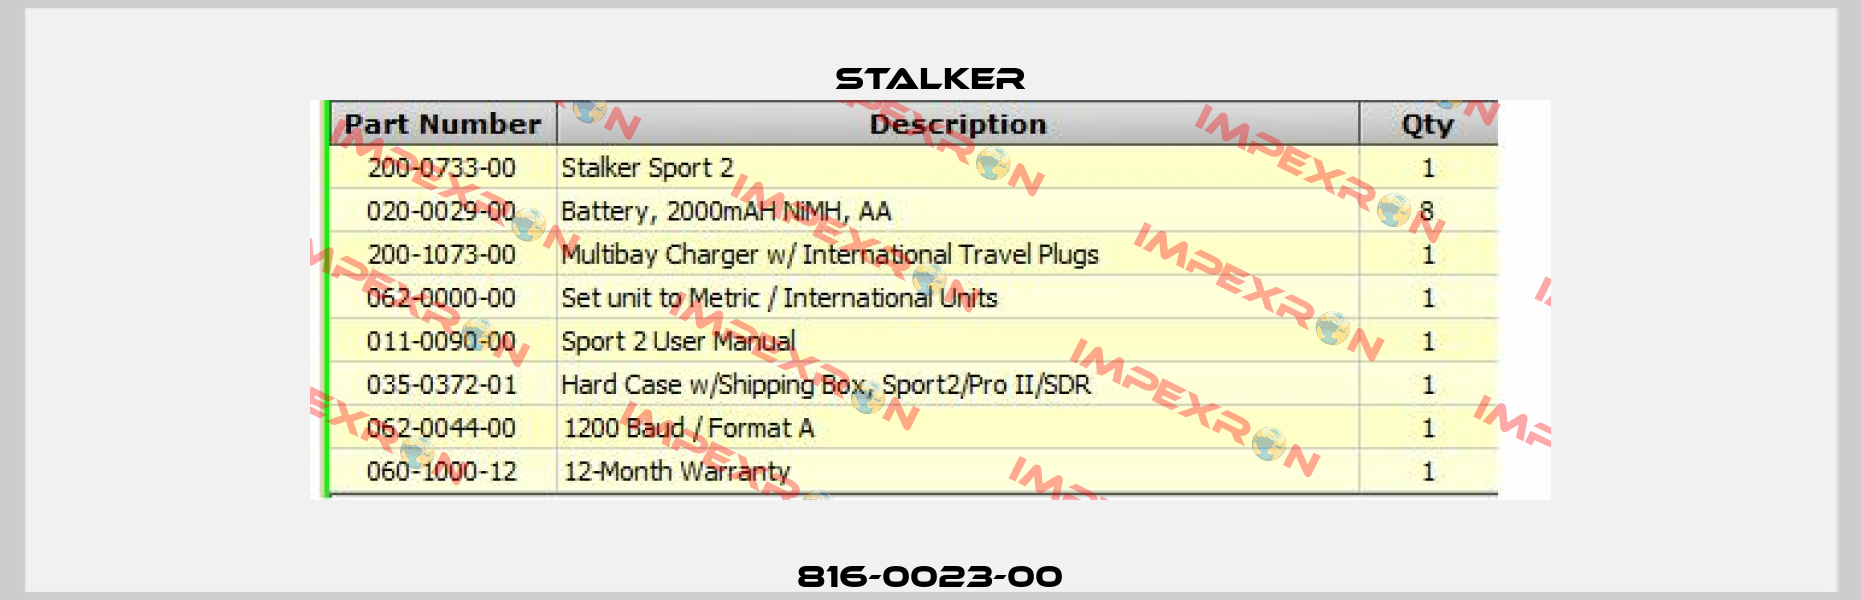 816-0023-00 Stalker